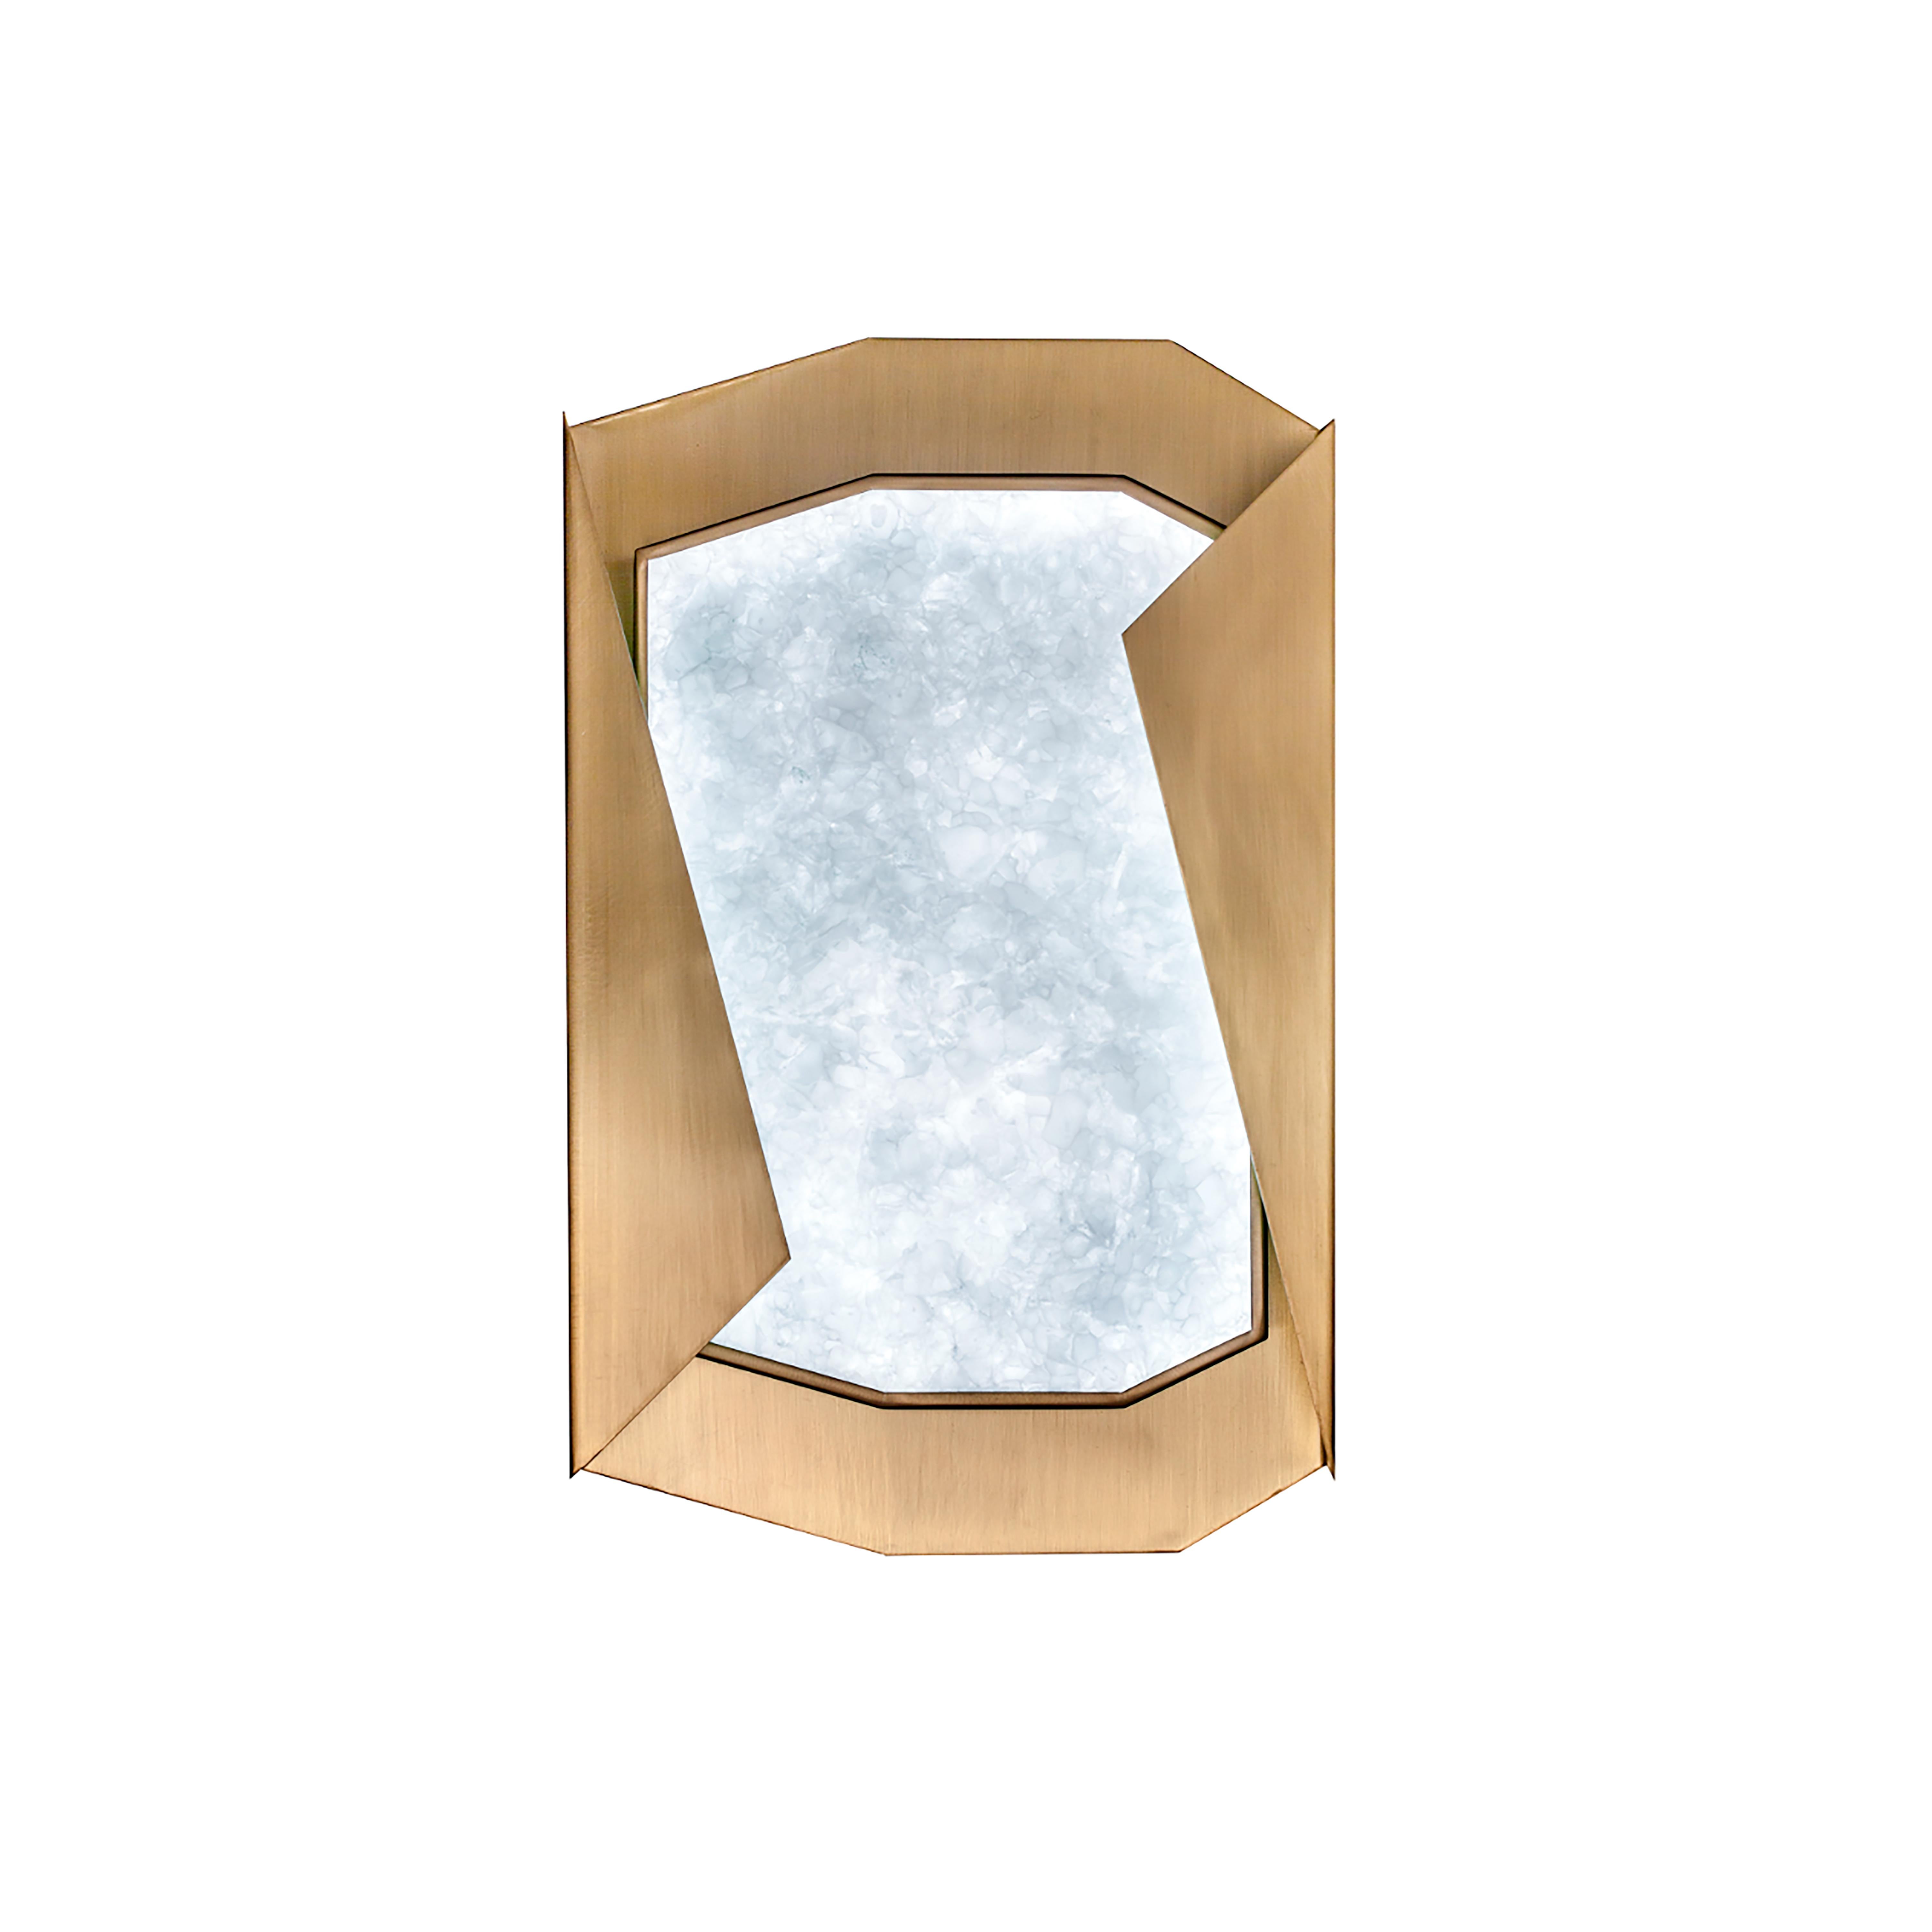 Applique Stardust, en laiton brossé et verre artisanal par Duistt 

L'applique Origami présente un design moderne et élégant soutenu par la noblesse de son matériau, le laiton. Le contraste entre l'intérieur en laiton brossé et l'extérieur en laiton